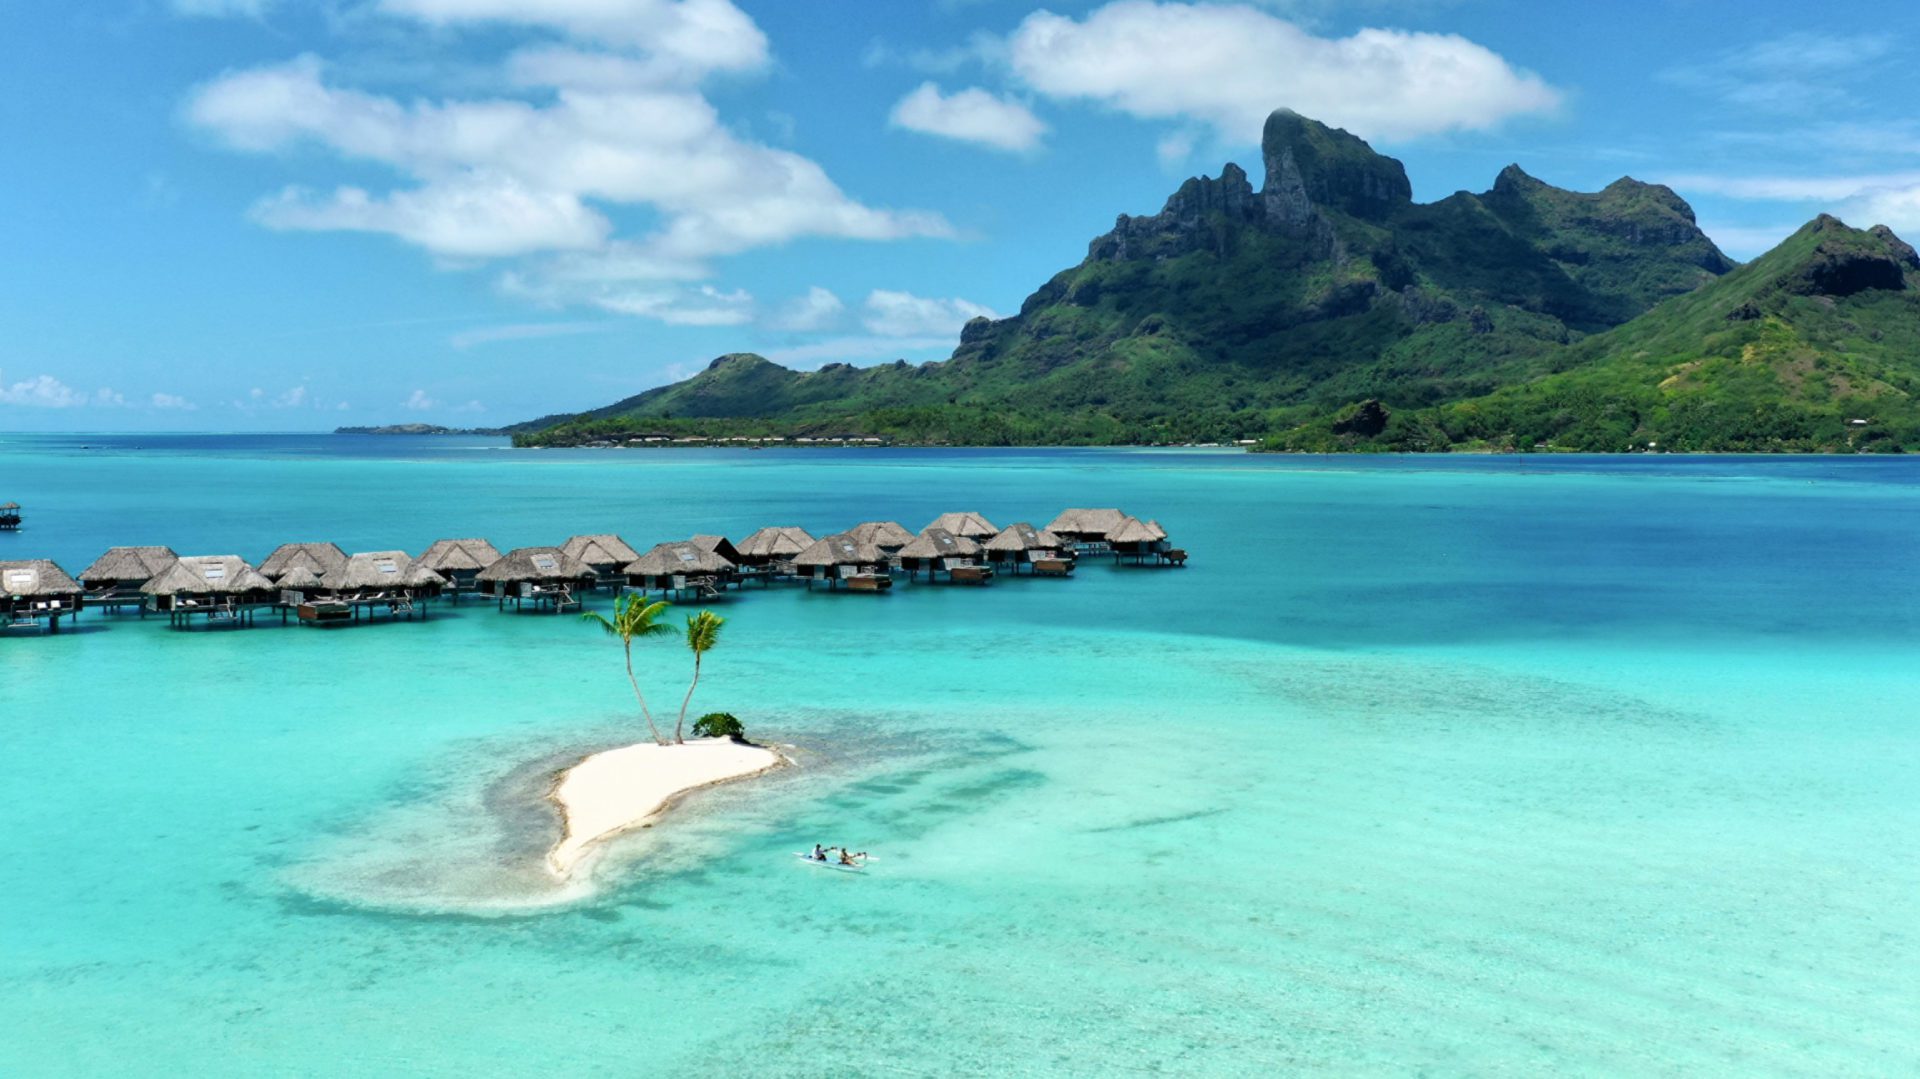 KKTWW - Four Seasons Resort Bora Bora – Bora Bora French Polynesia